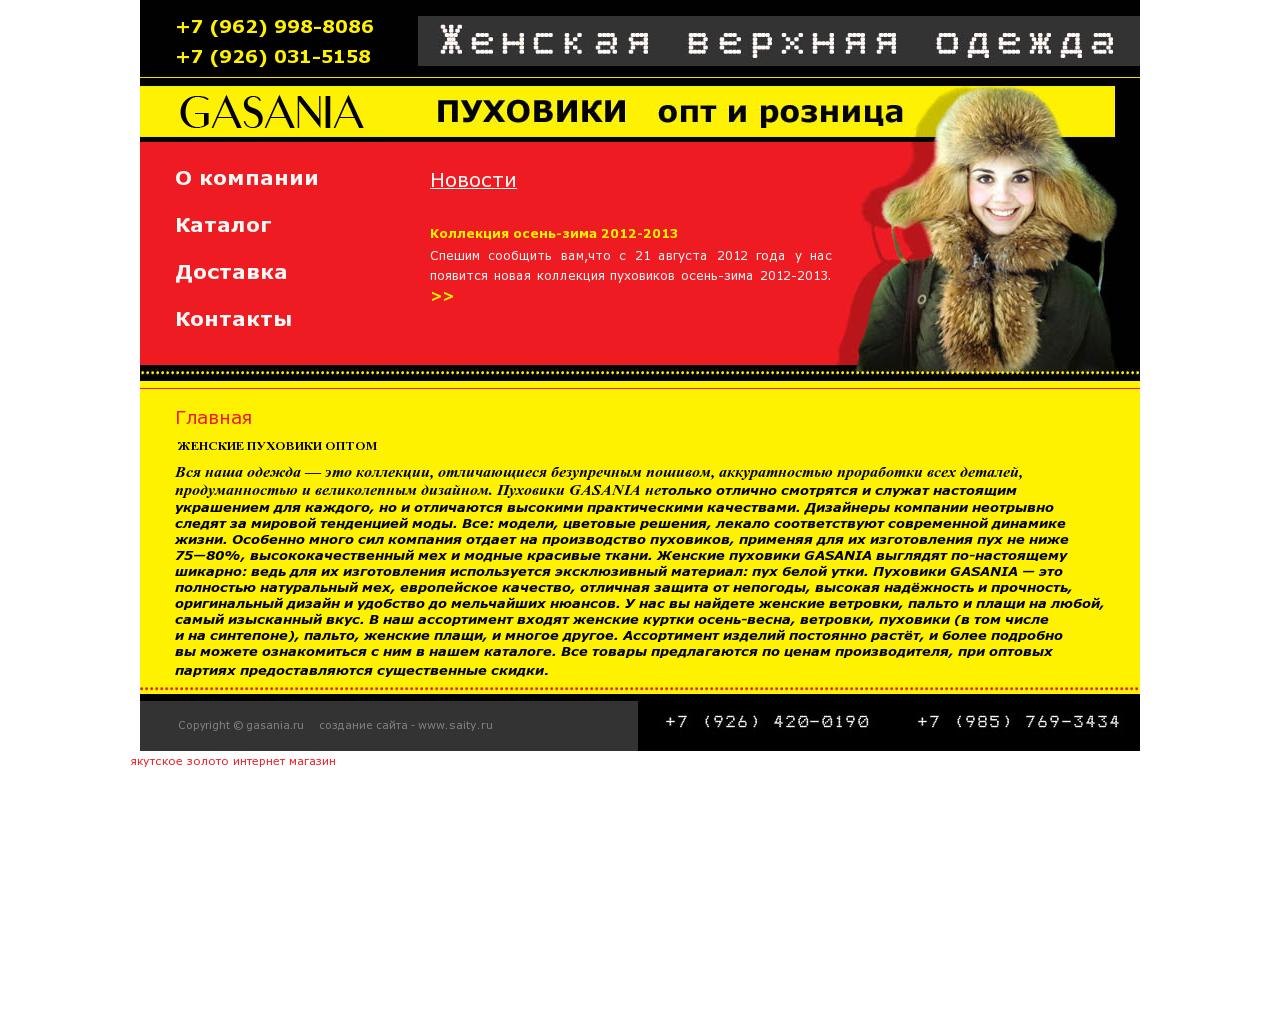 Изображение сайта gasania.ru в разрешении 1280x1024